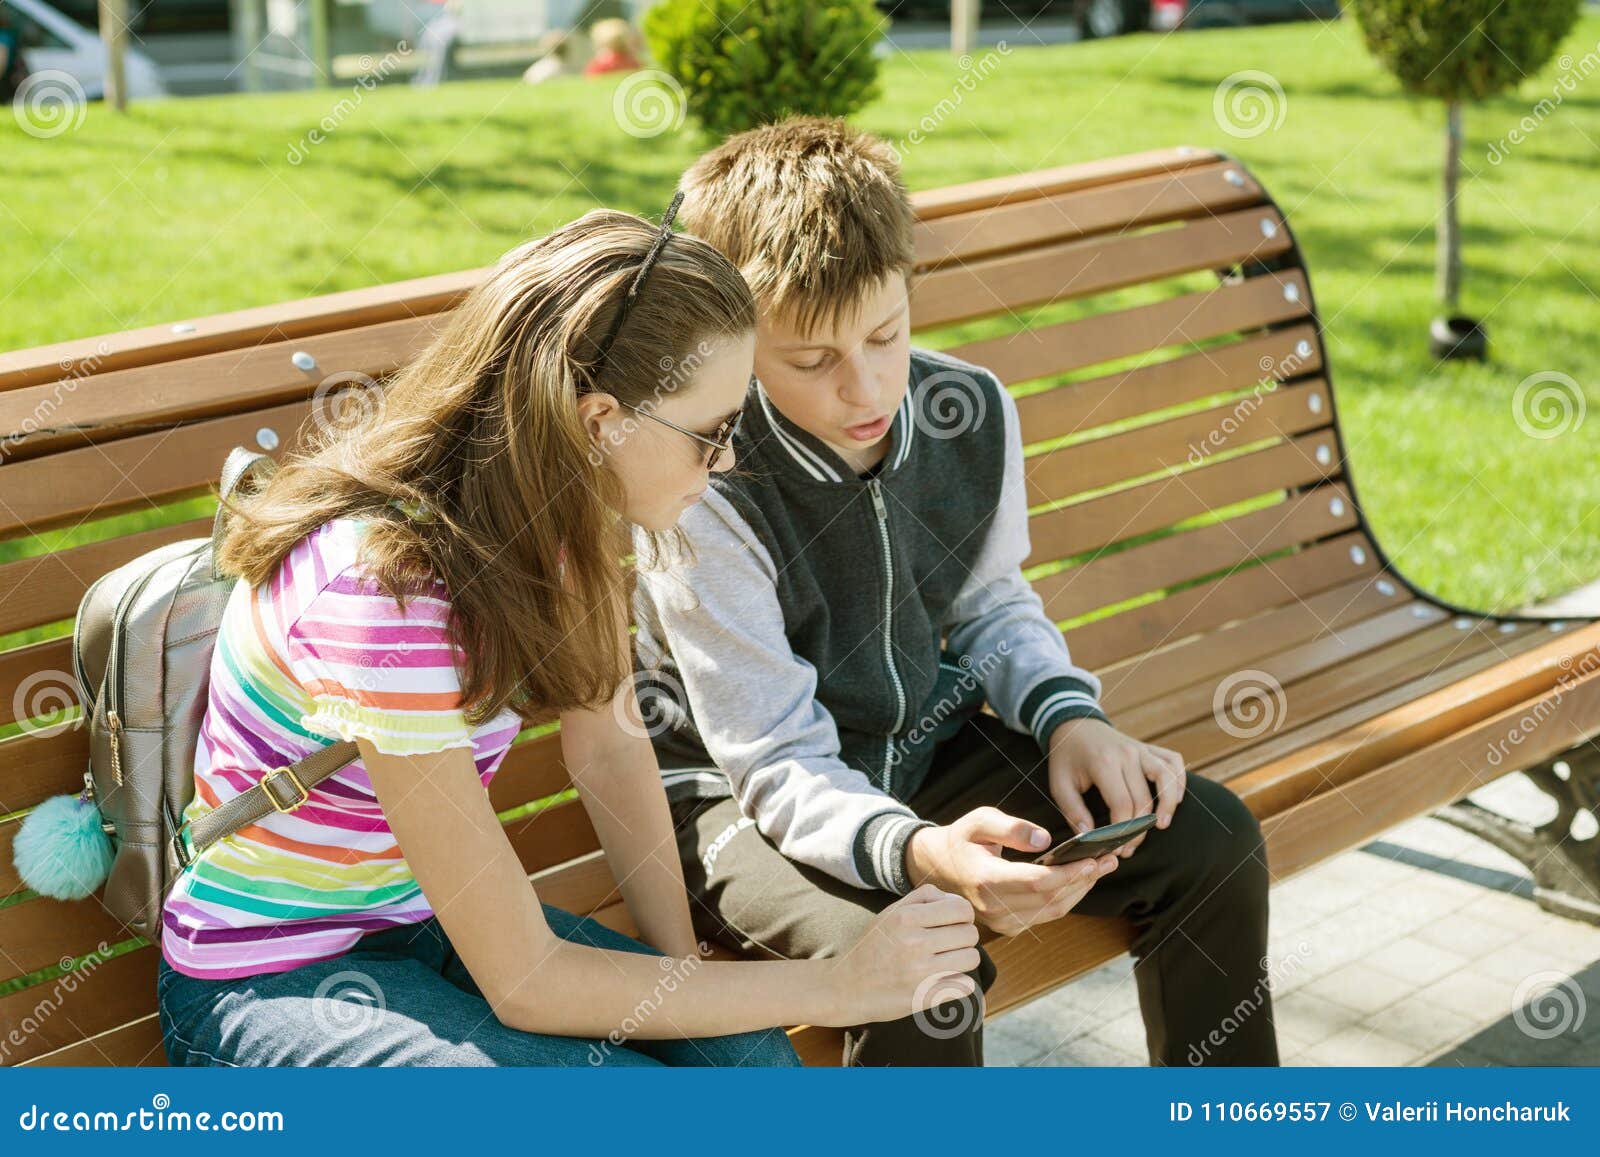 Сами играет читать. Мальчик играет а девочка читает. Девочки подростки играются у дома. Подростки парень и девушка играются между собой на улице. Девочка читает книгу на скамейке в парке.